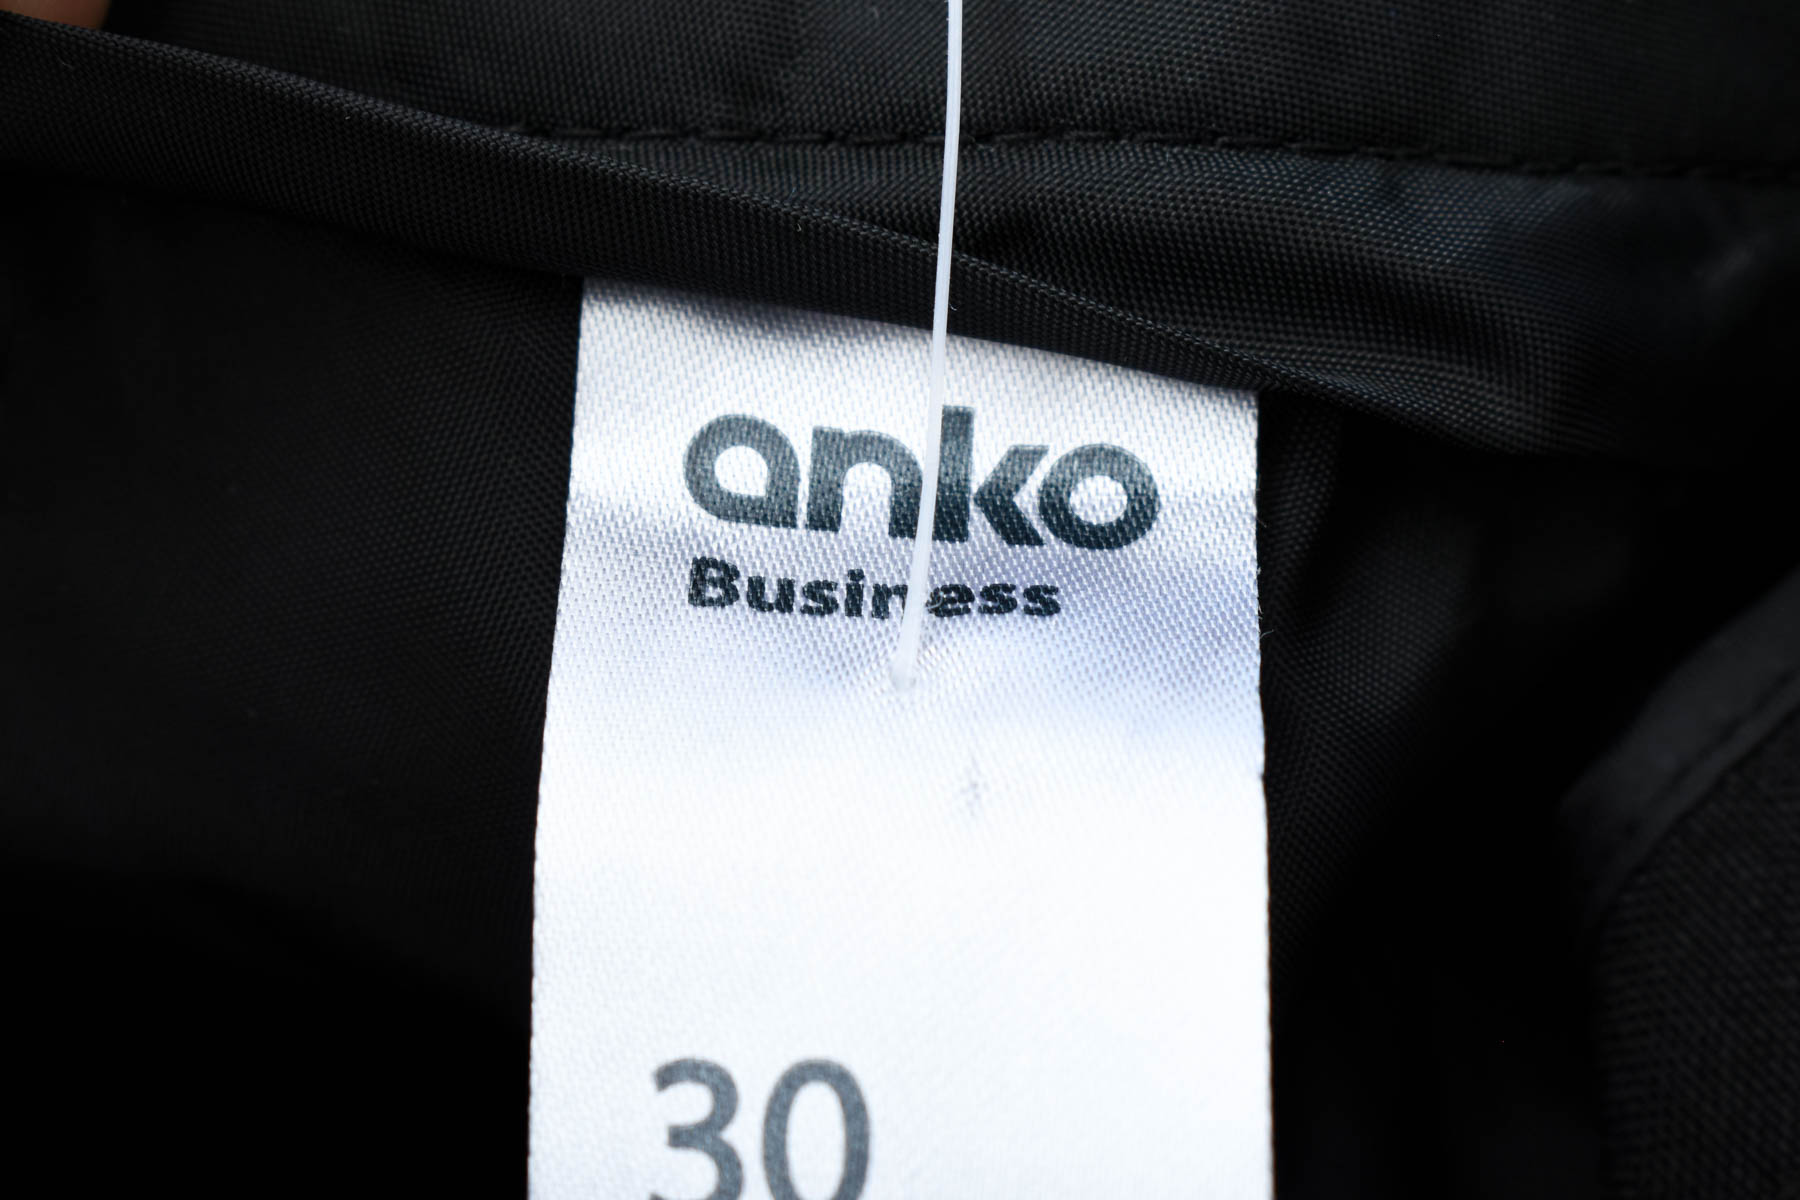 Γυναικεία παντελόνια - Anko - 2